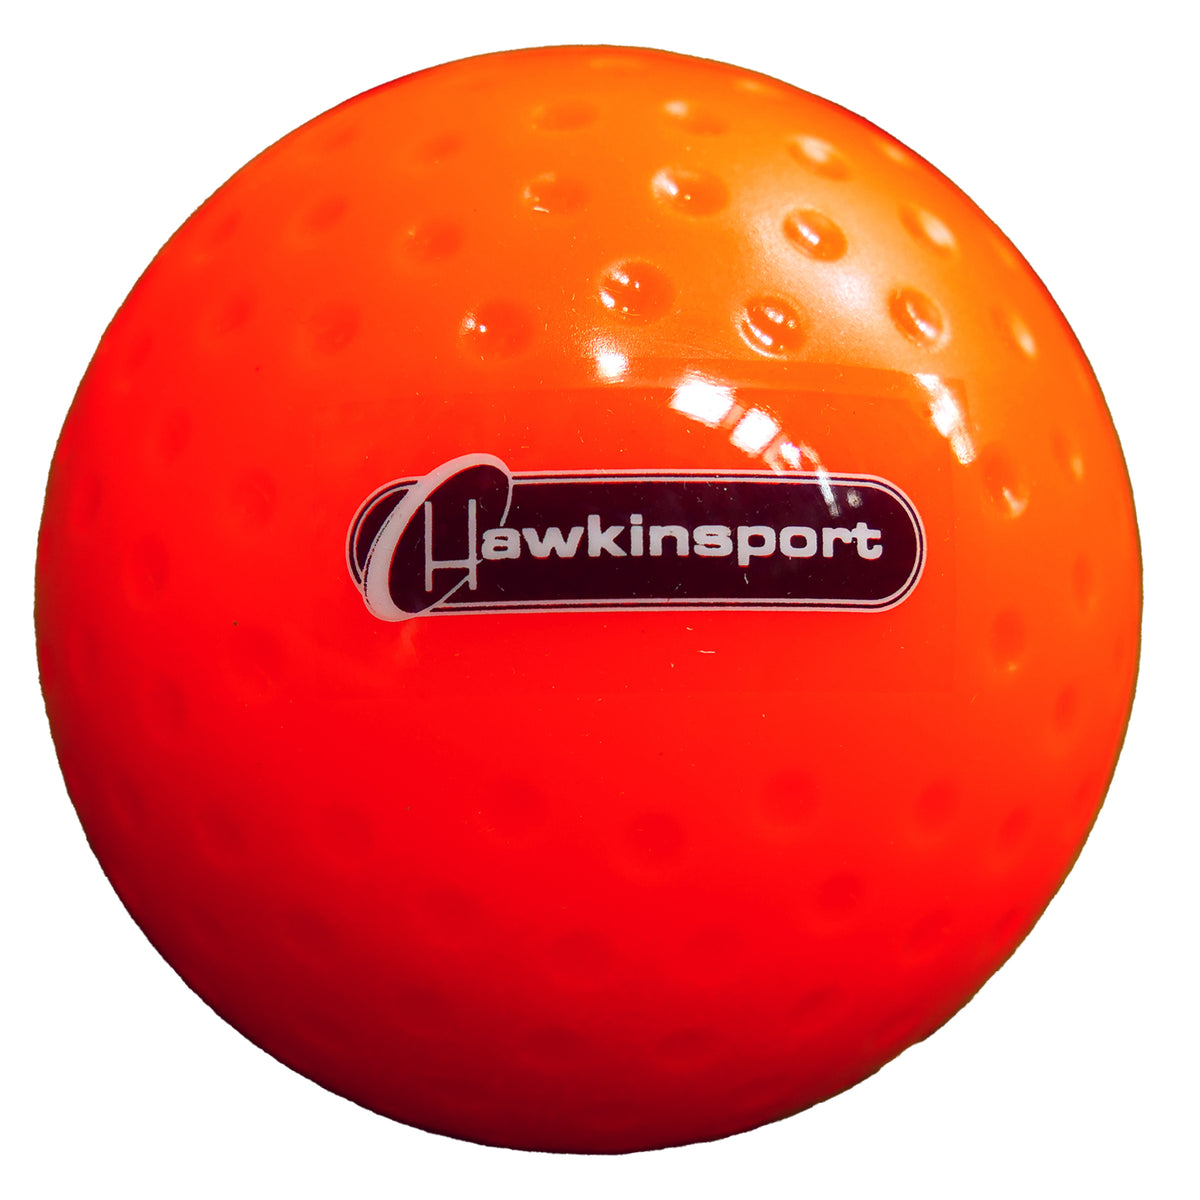 Kookaburra Saturn Dimple Hockey Ball: Orange